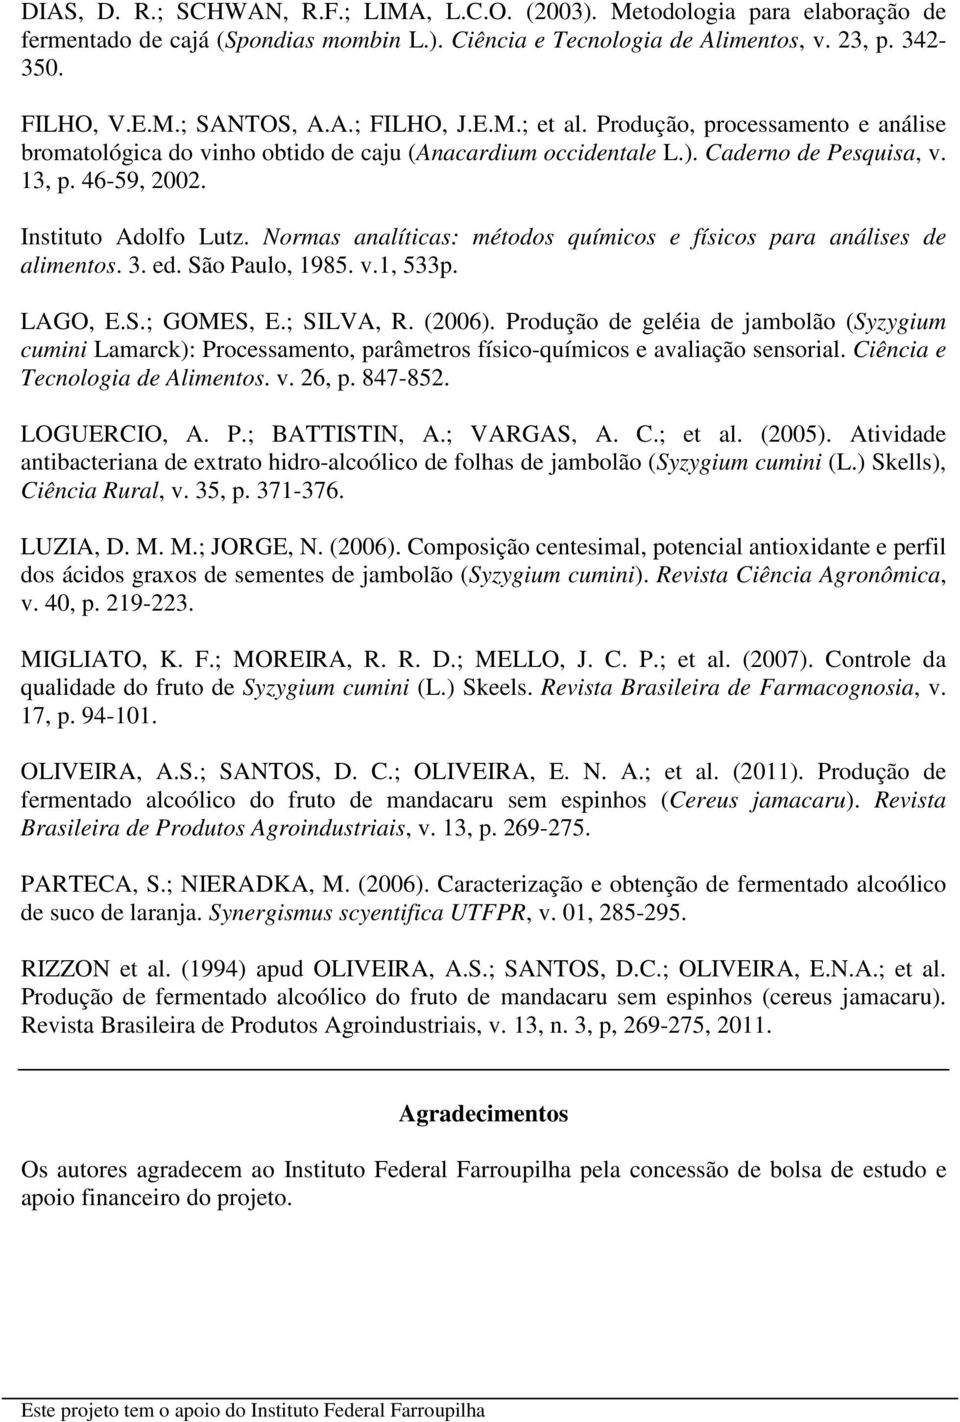 Normas analíticas: métodos químicos e físicos para análises de alimentos. 3. ed. São Paulo, 1985. v.1, 533p. LAGO, E.S.; GOMES, E.; SILVA, R. (2006).